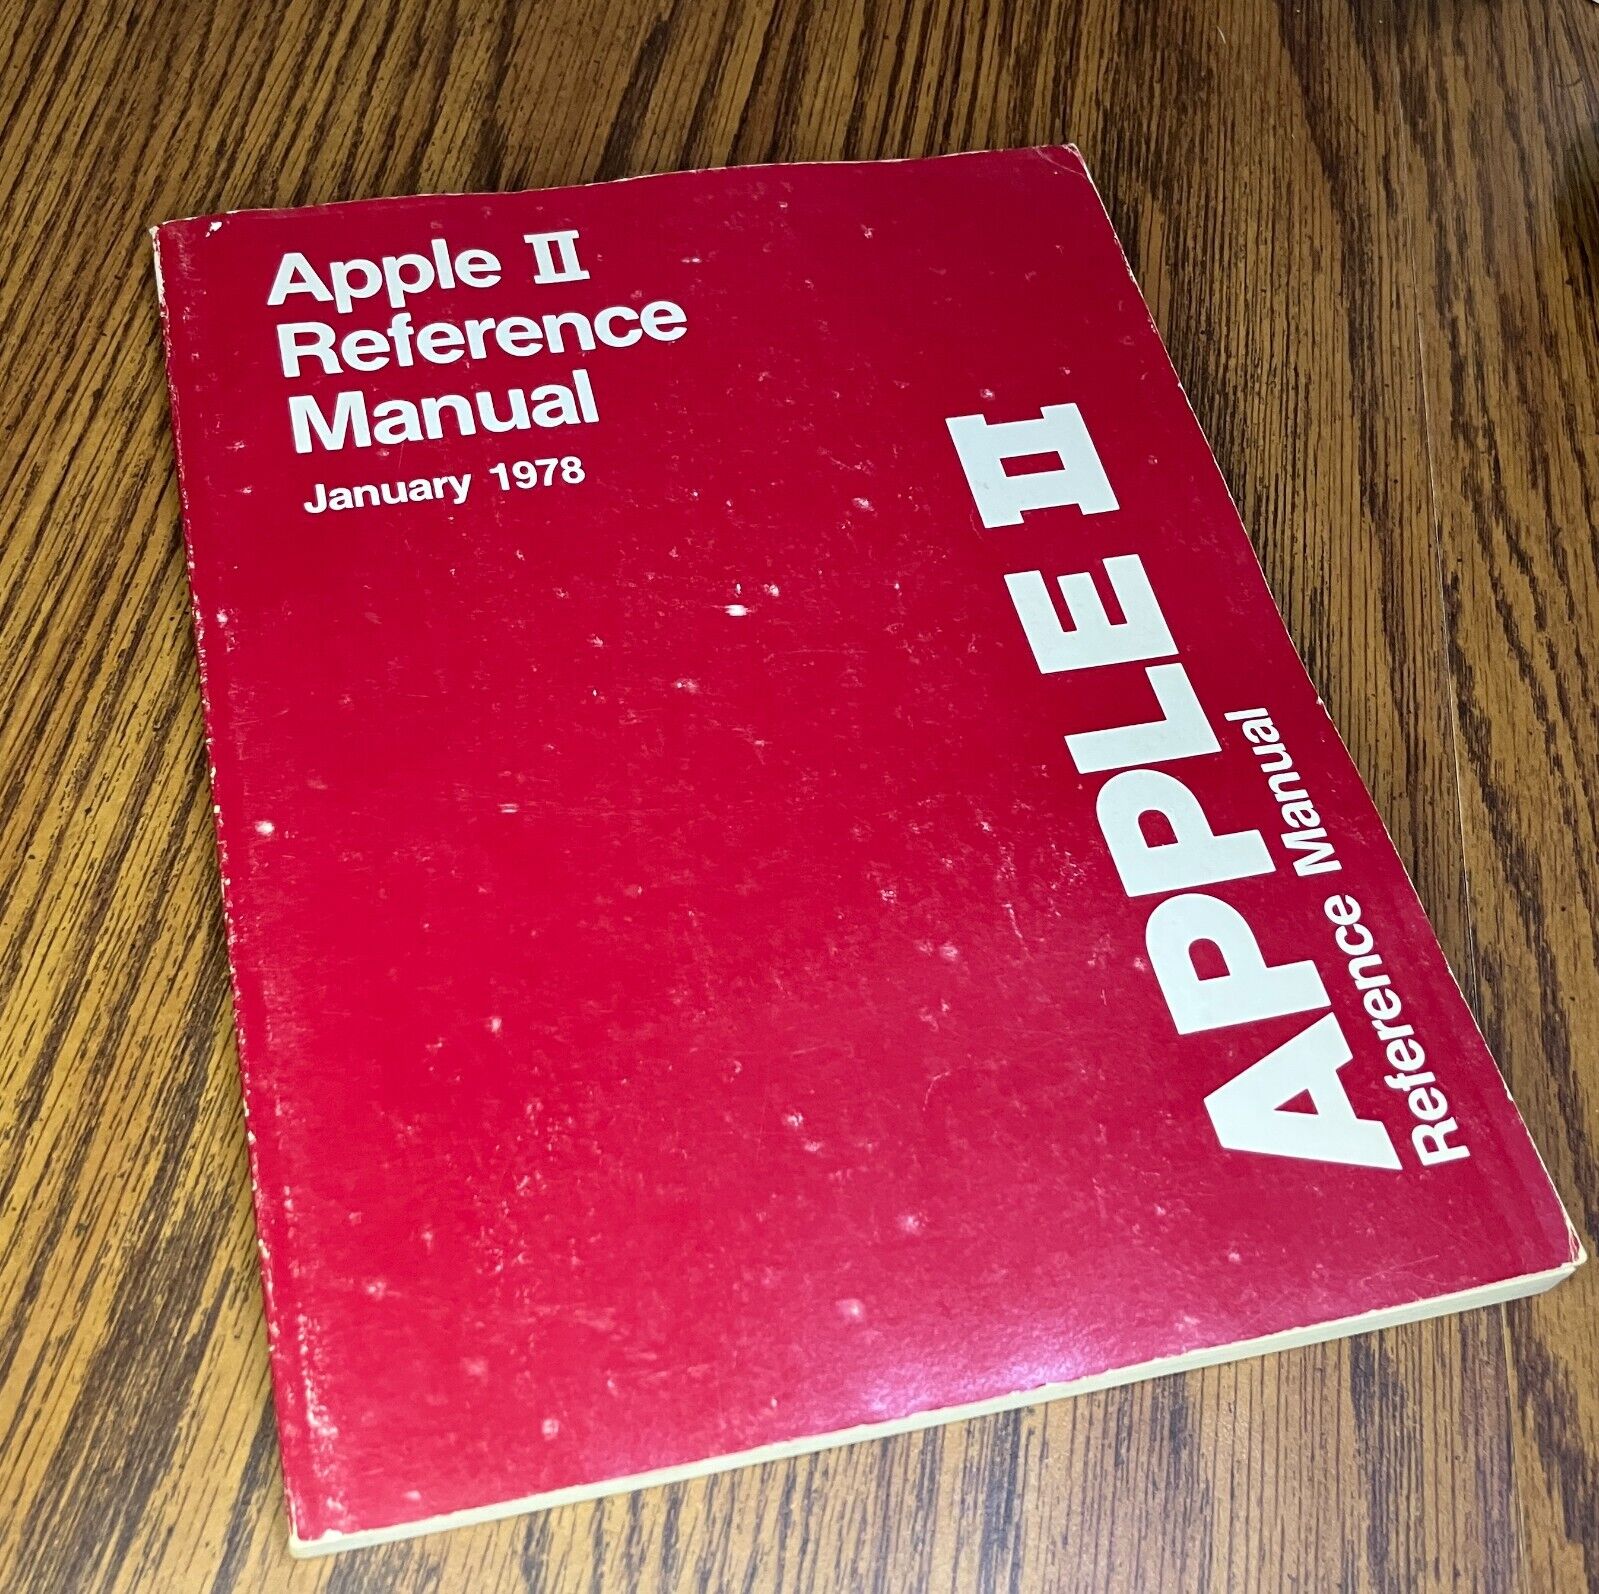 Apple II Reference Manual  aka RED BOOK Steve Wozniak 1978